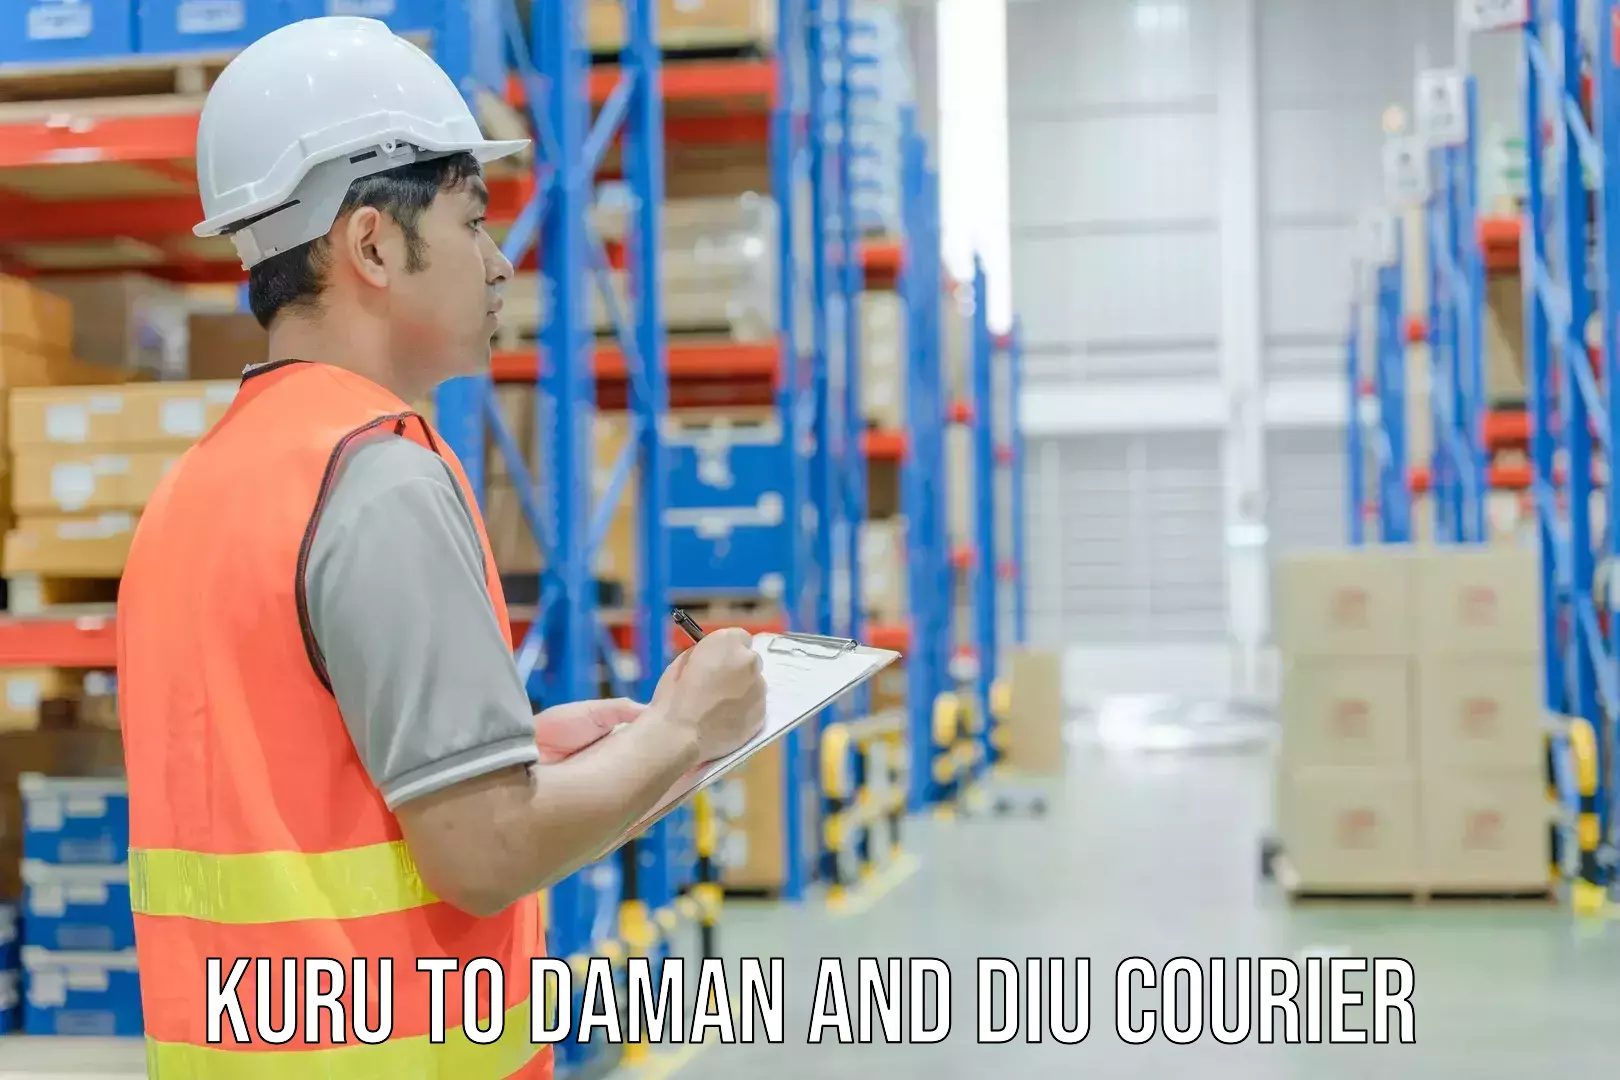 Efficient freight service Kuru to Daman and Diu